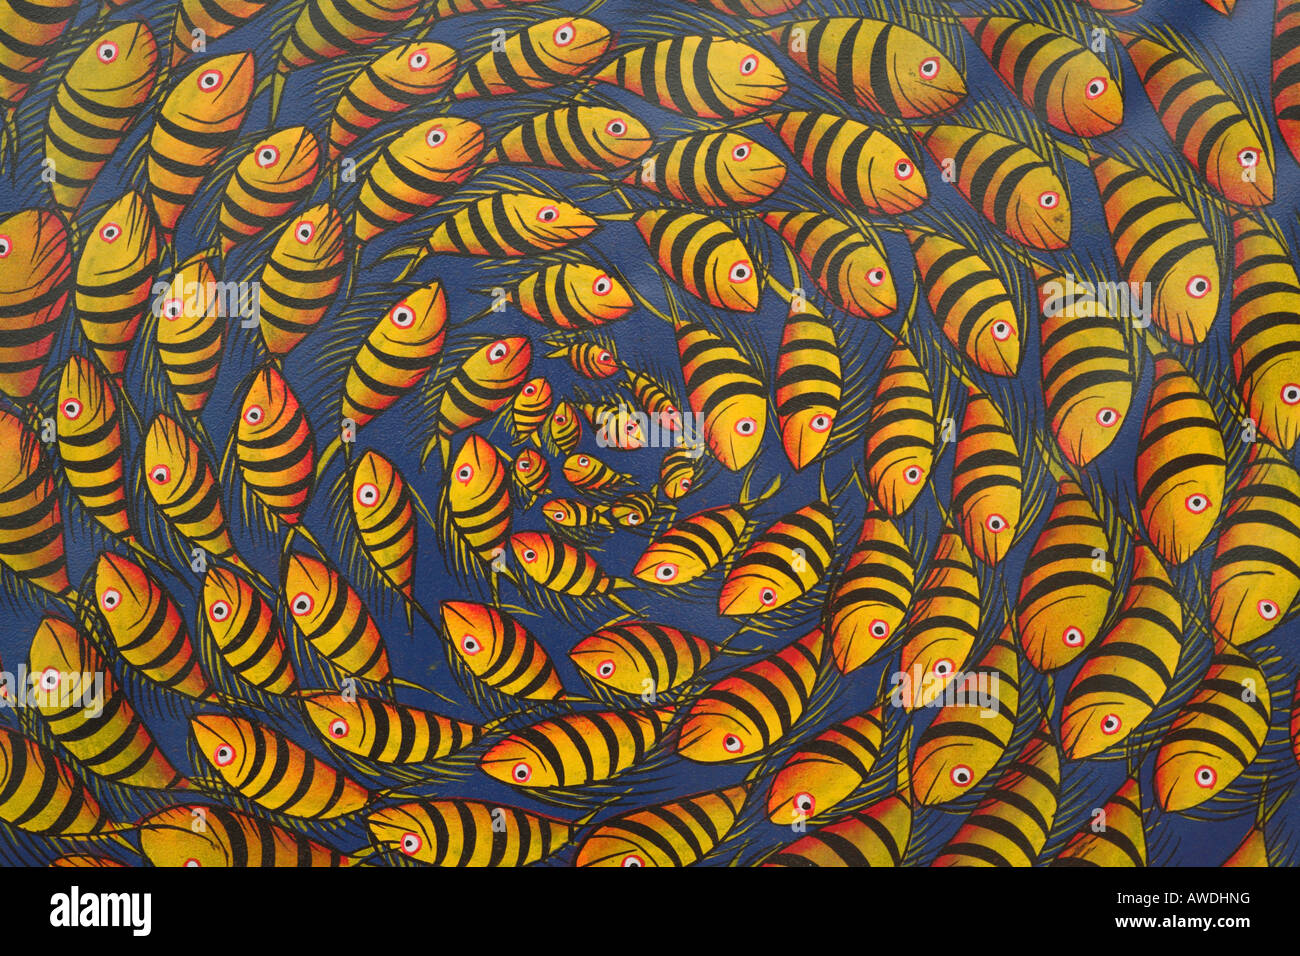 Peinture africaine d'un cercle de poissons multicolores sur un fond bleu Banque D'Images